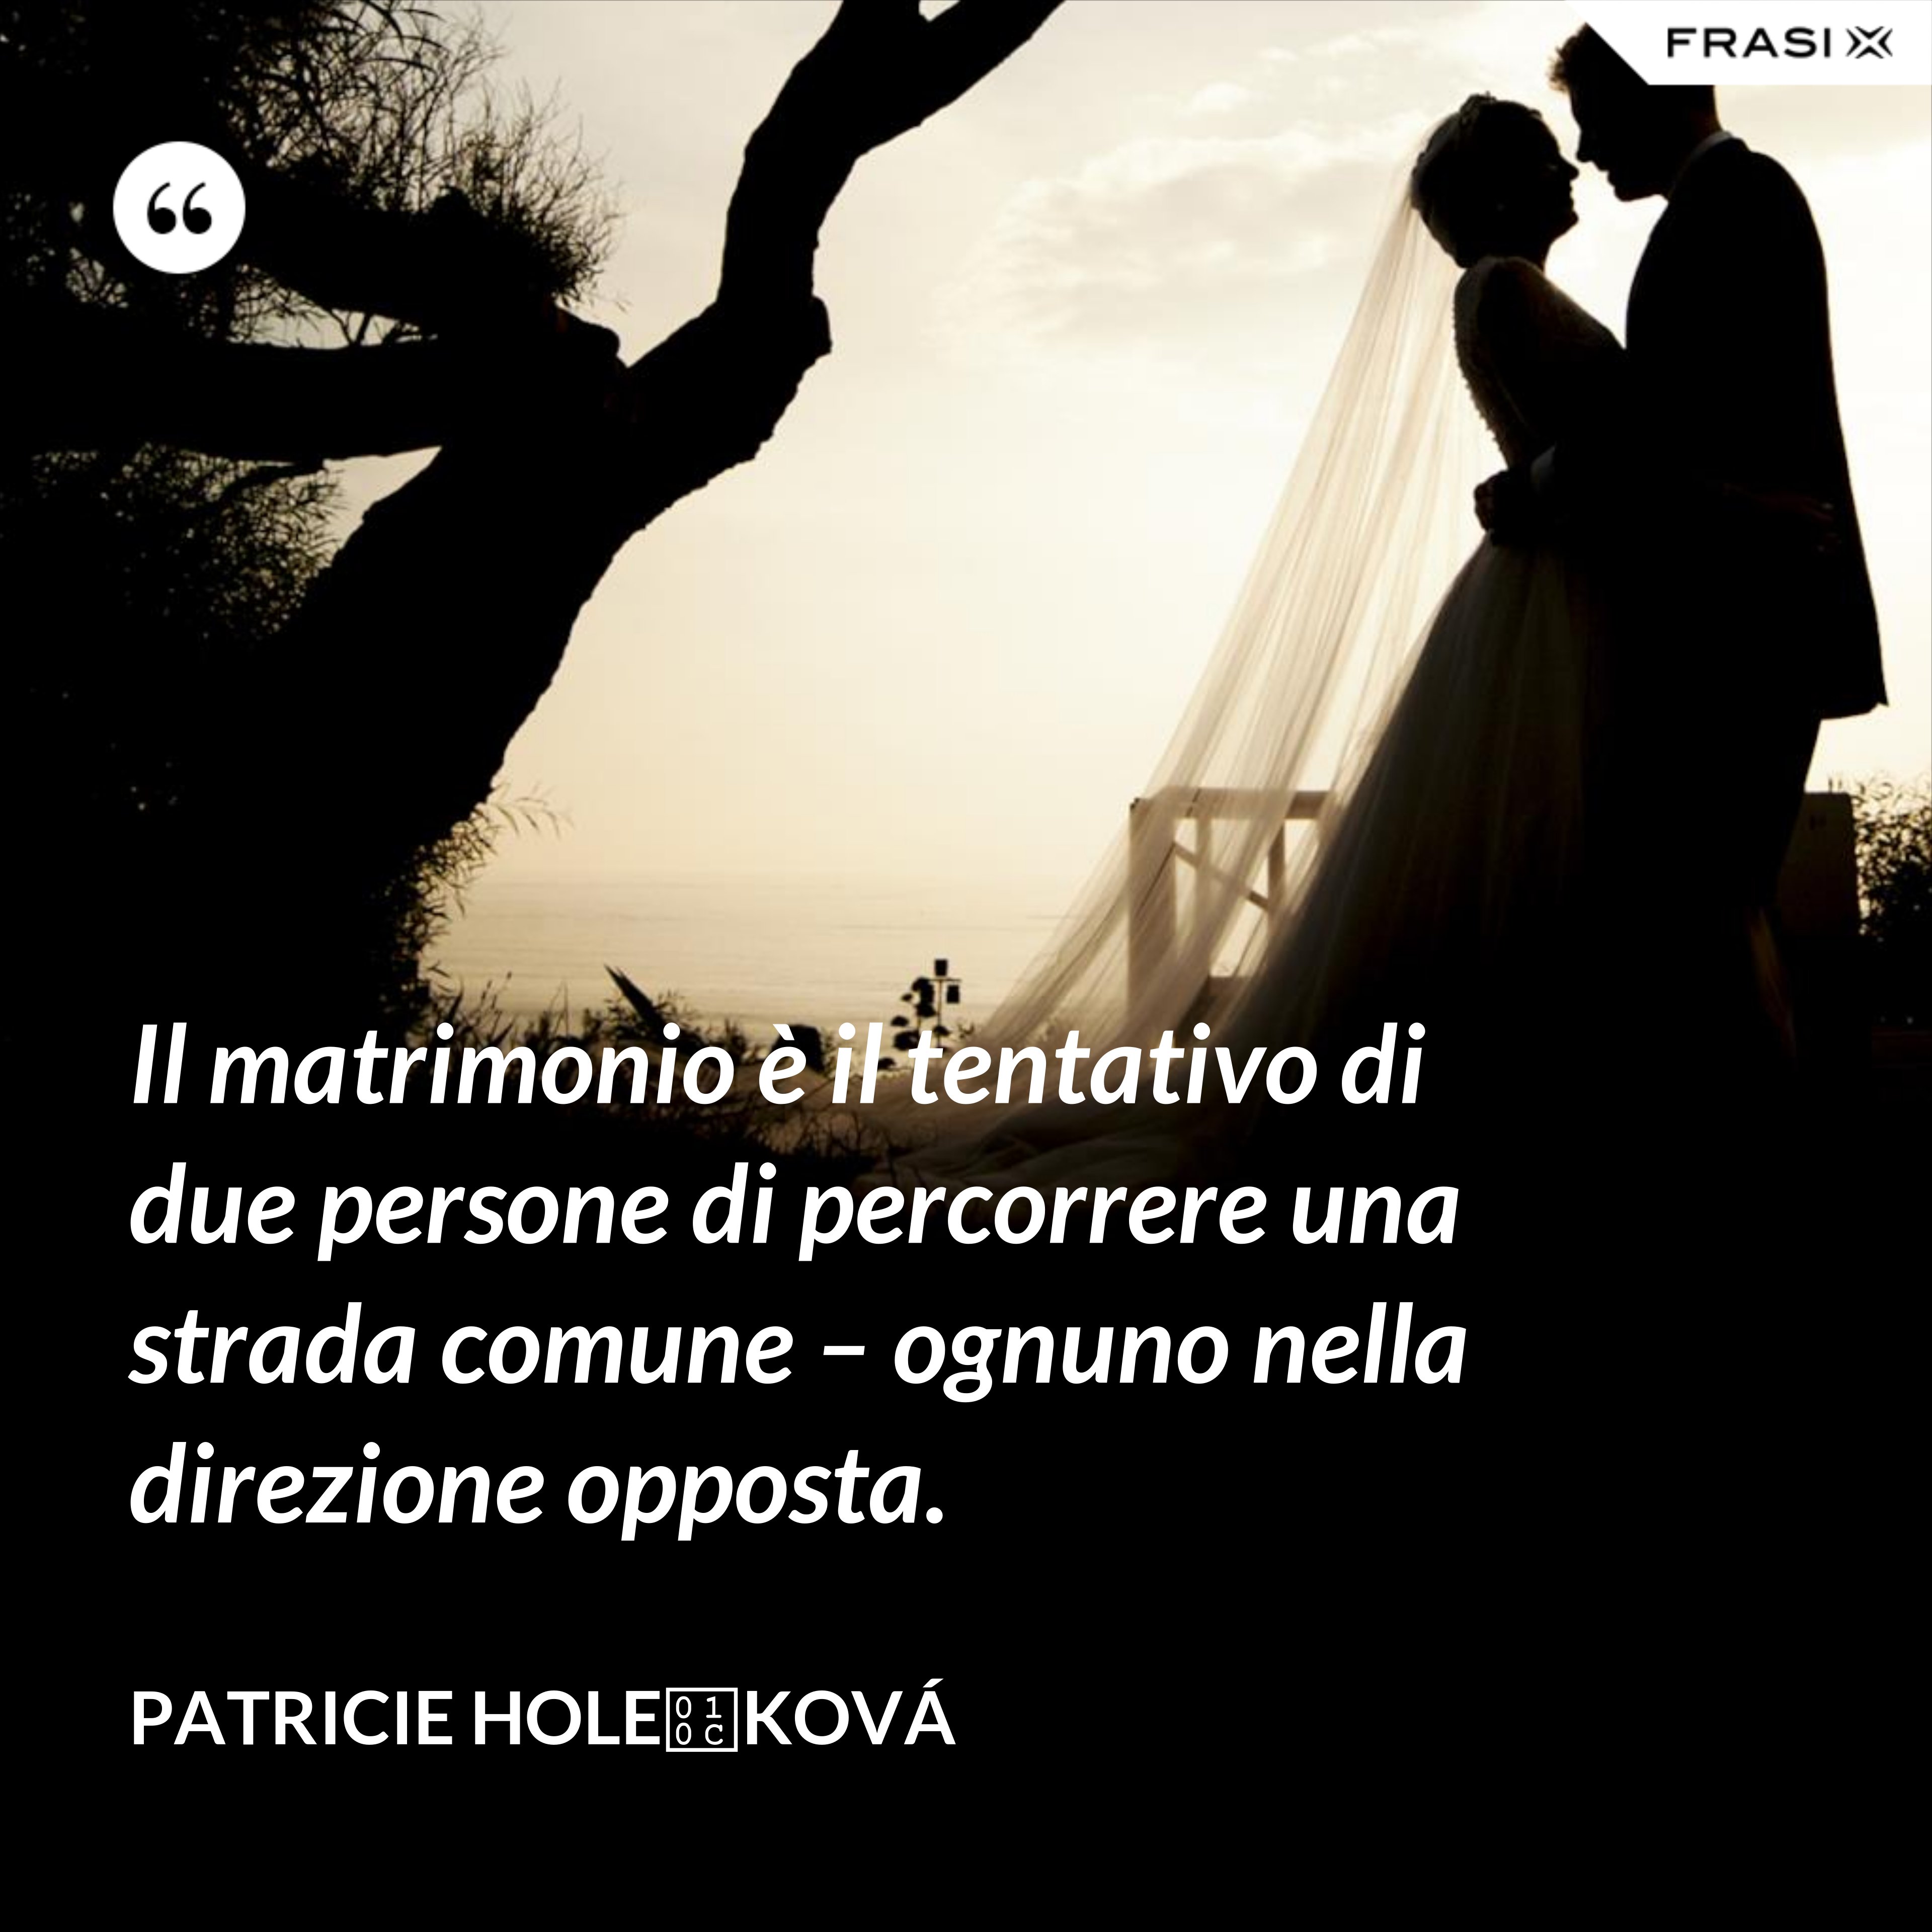 Il matrimonio è il tentativo di due persone di percorrere una strada comune – ognuno nella direzione opposta. - Patricie Holečková